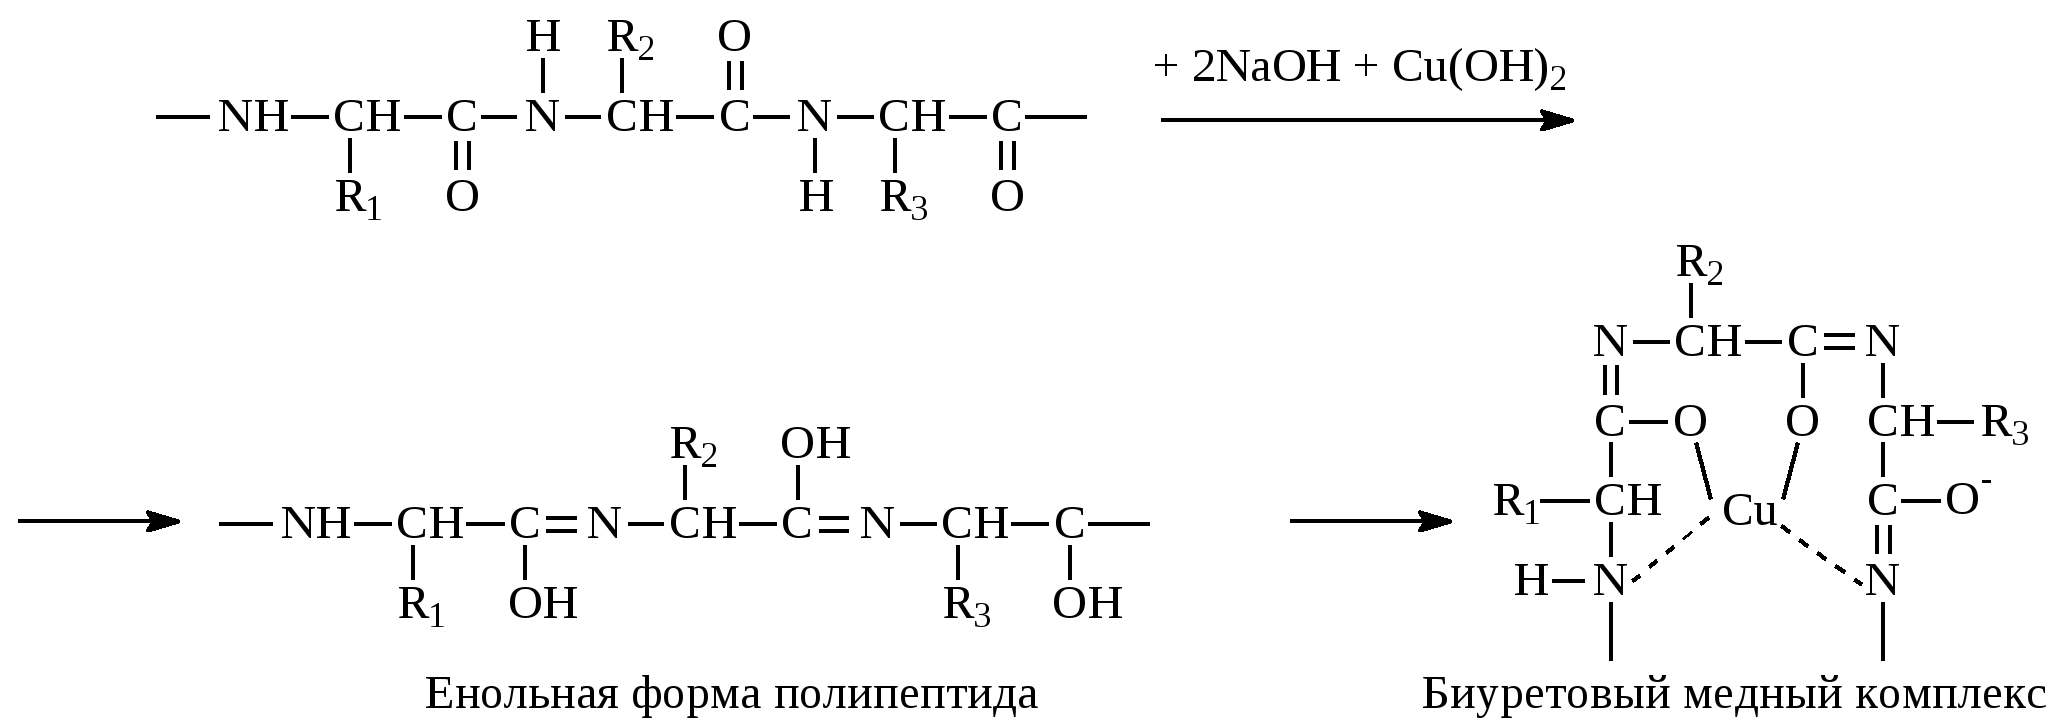 Формы полипептидов. Енольная форма. Реакция глицина с формальдегидом. Глицин и формальдегид. Полипептиды с азотной кислотой дают фиолетовое окрашивание